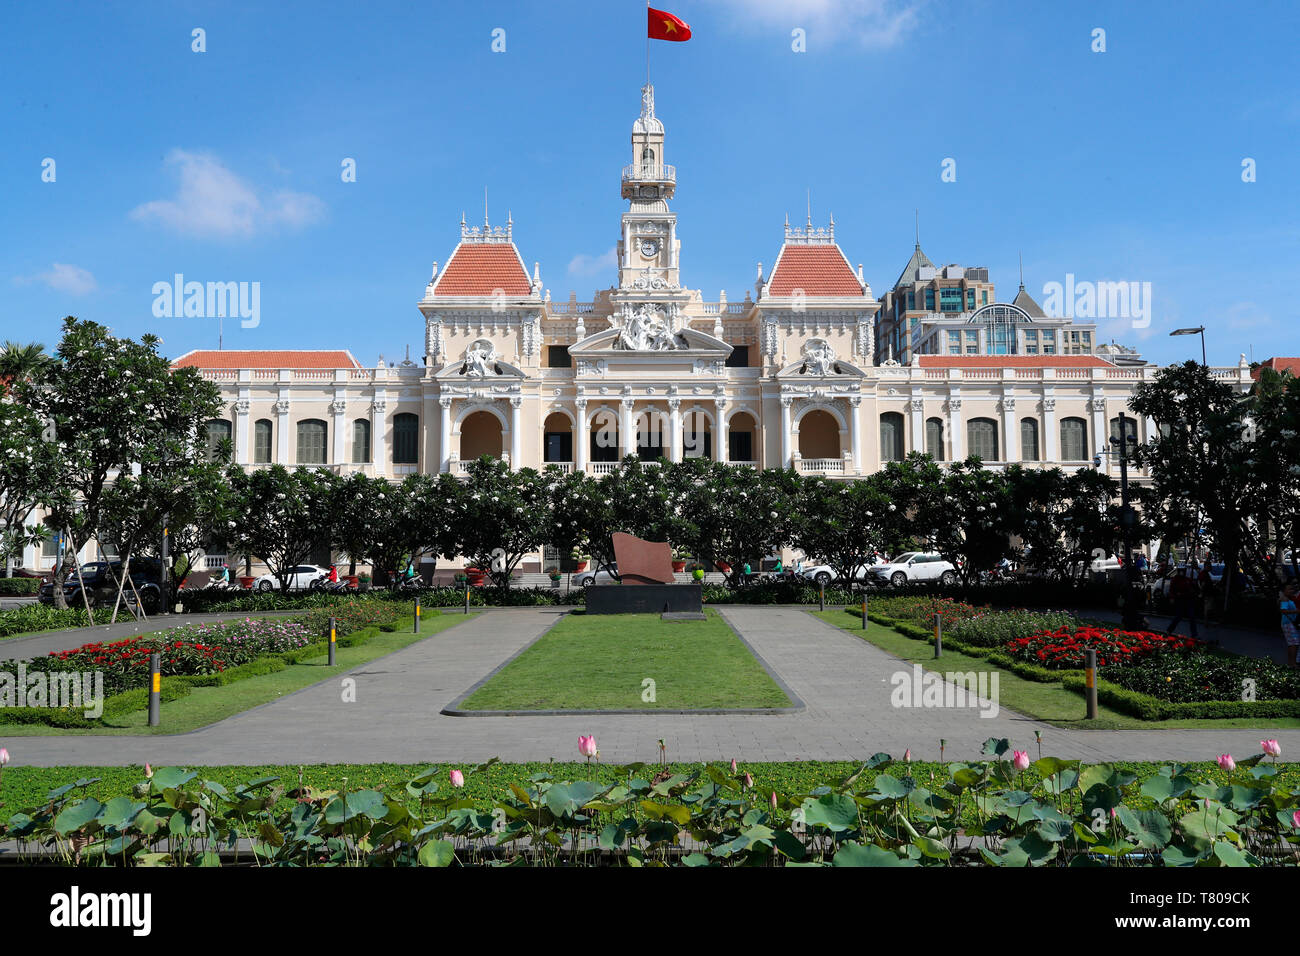 El distrito 1, Ciudad de Ho Chi Minh ayuntamiento y jardín, construcción colonial francés, Ho Chi Minh, Vietnam, Indochina, en el sudeste de Asia, Asia Foto de stock